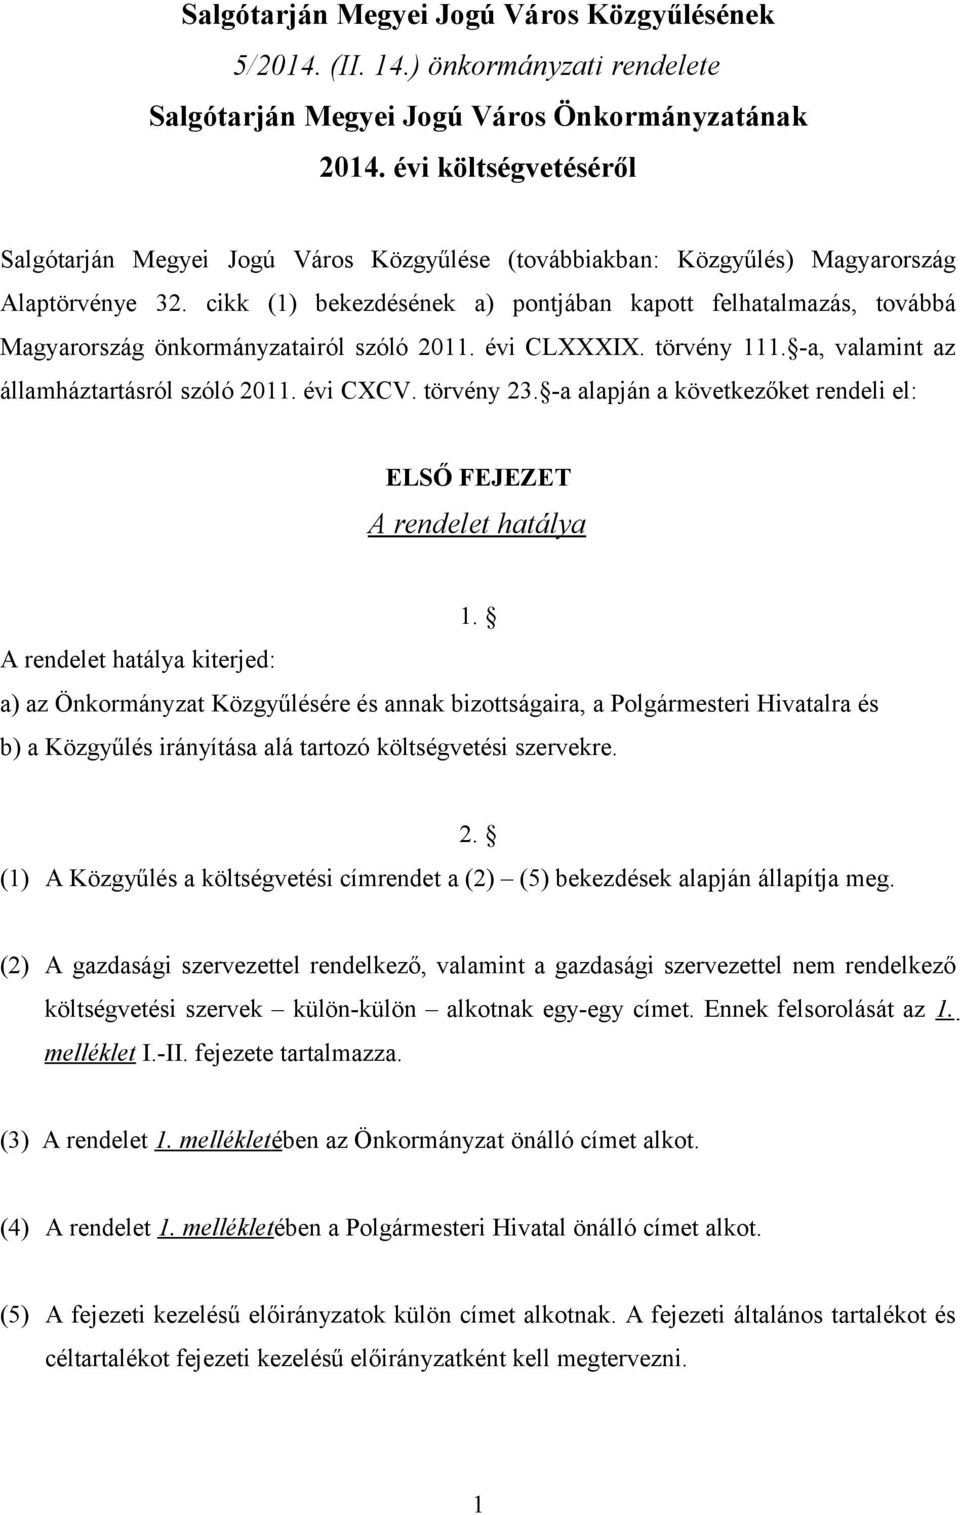 cikk (1) bekezdésének a) pontjában kapott felhatalmazás, továbbá Magyarország önkormányzatairól szóló 2011. évi CLXXXIX. törvény 111. -a, valamint az államháztartásról szóló 2011. évi CXCV.